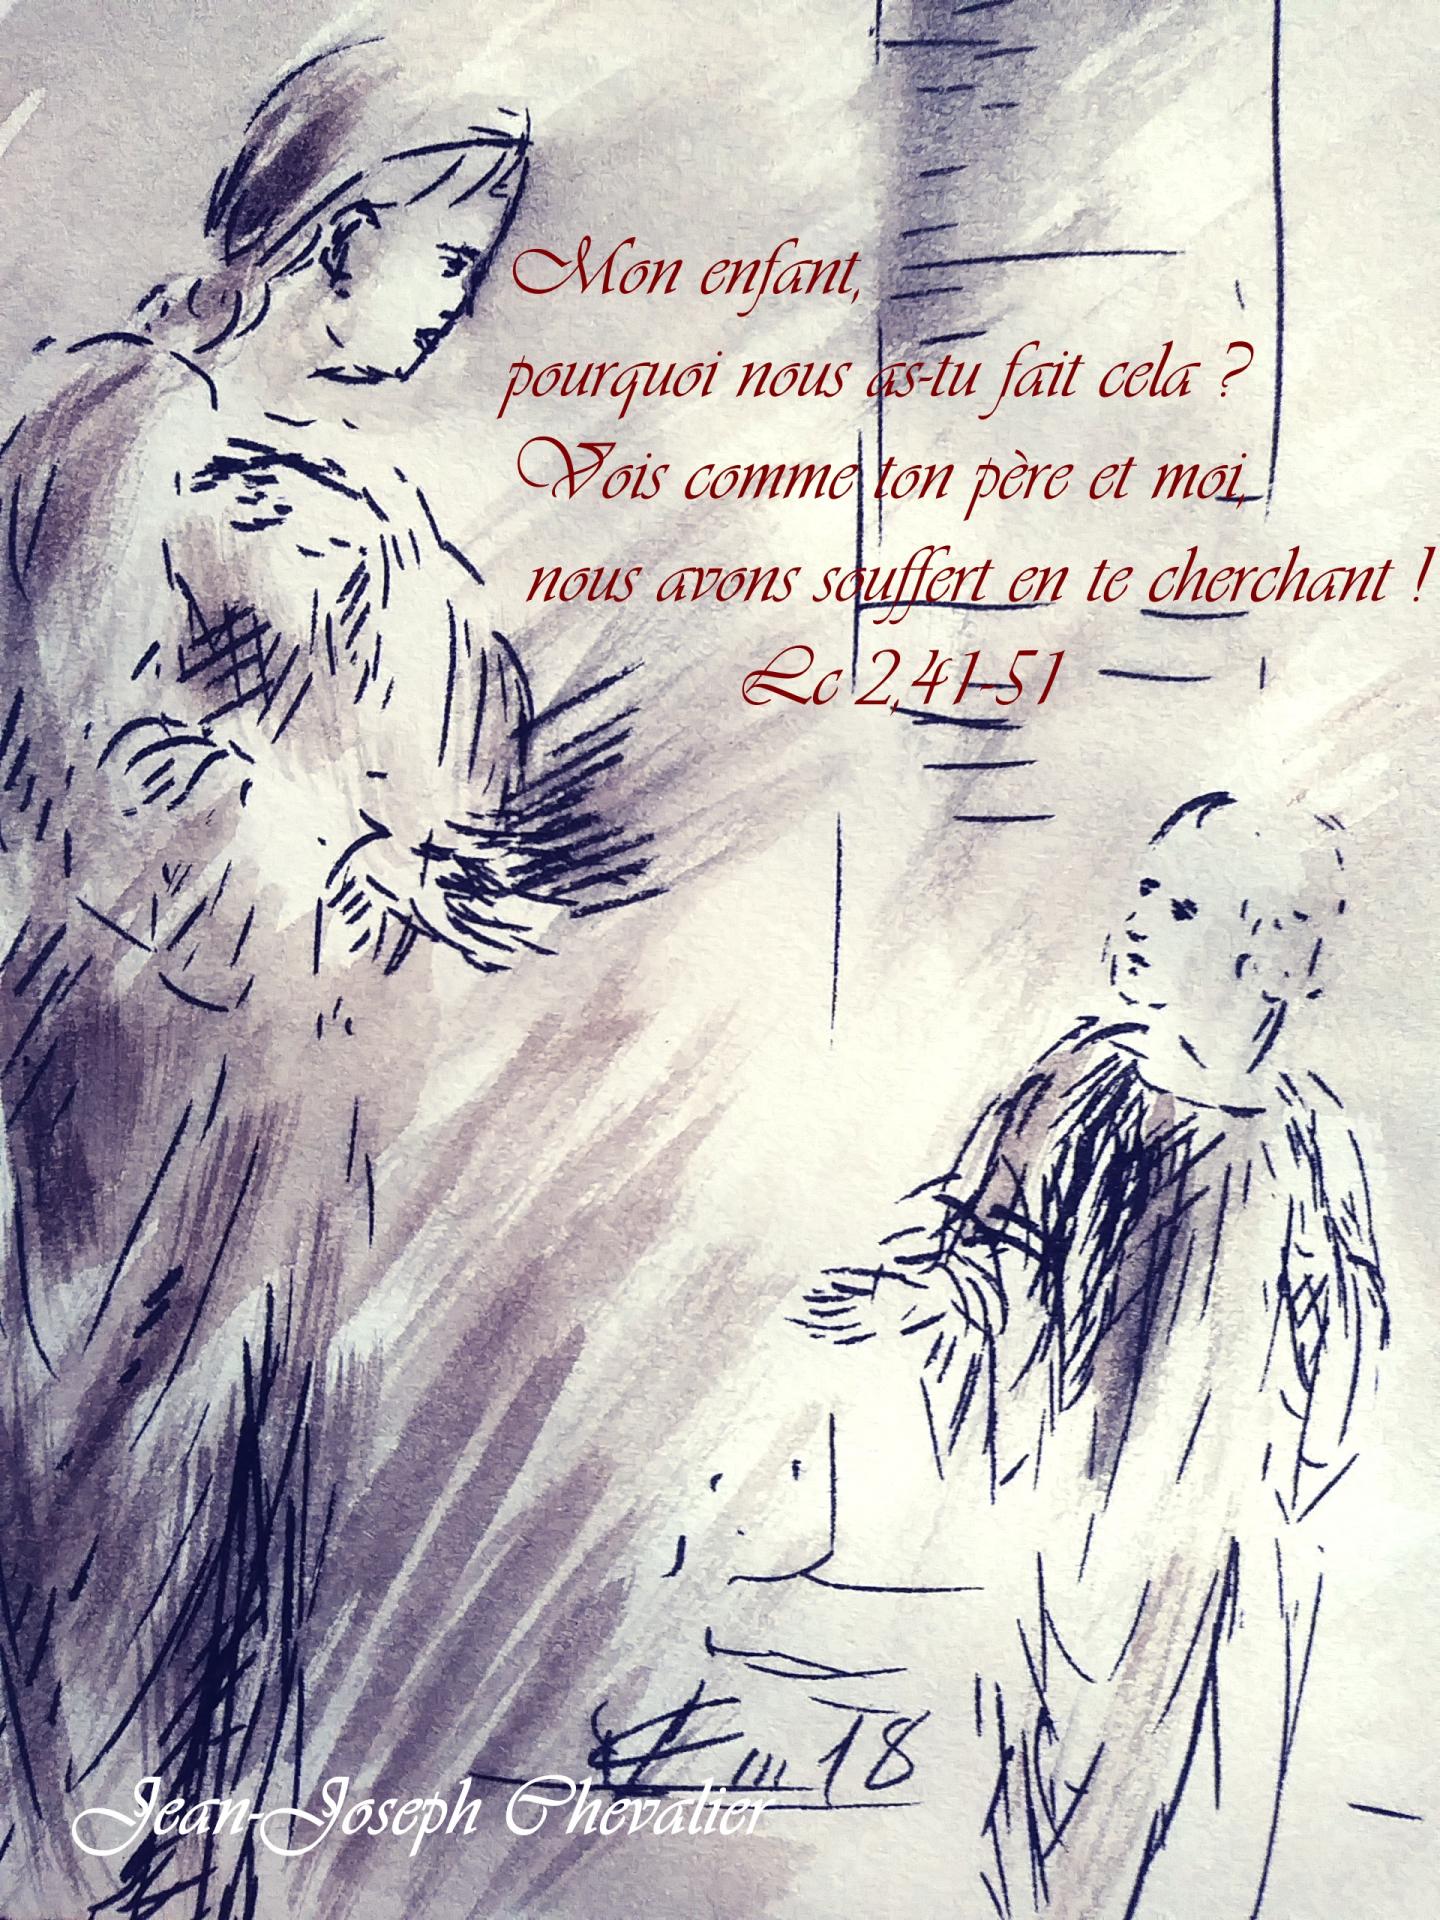 9 Juin 2018, évangile du jour illustré par un dessin au lavis